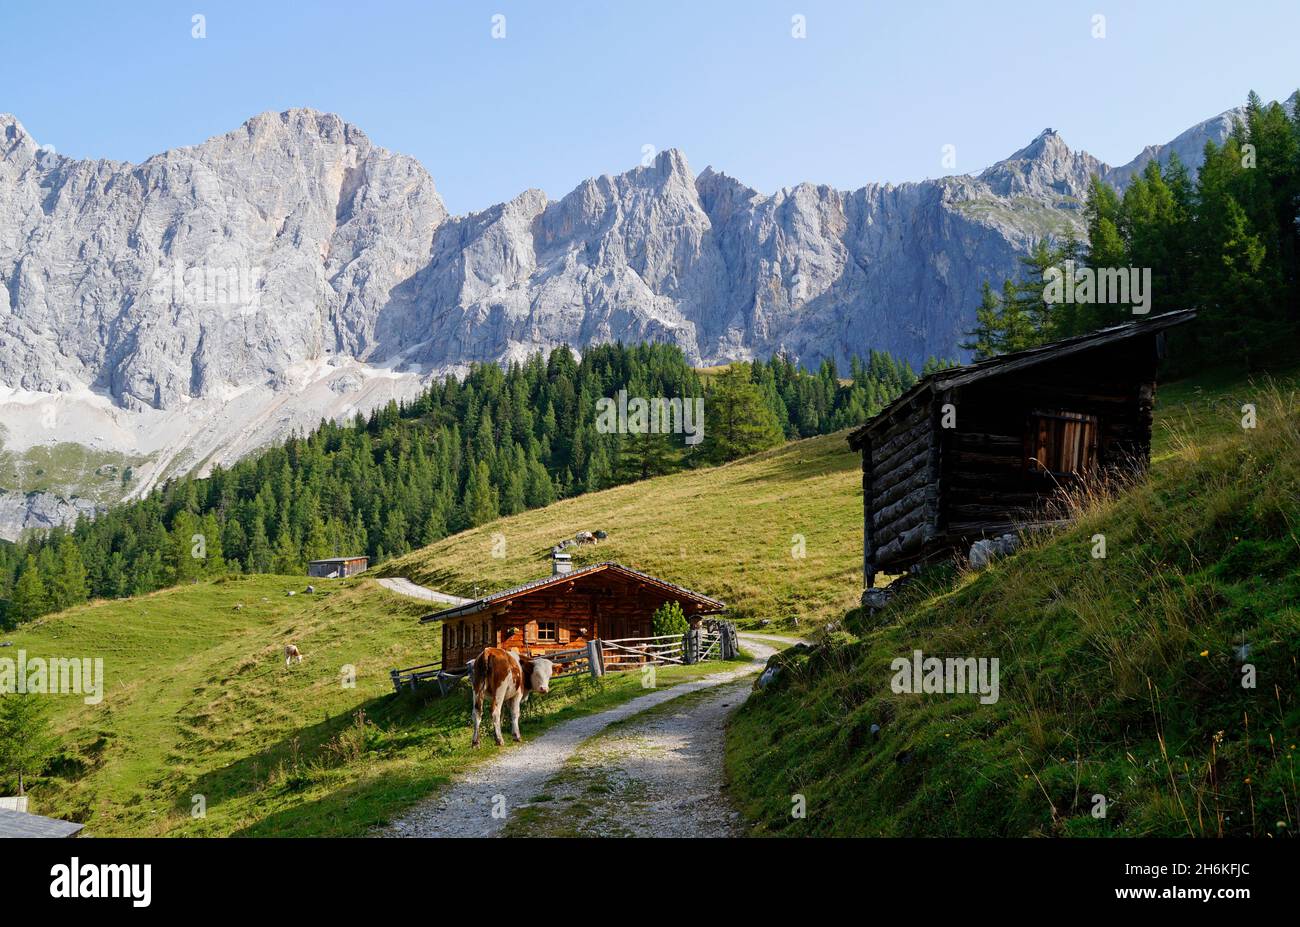 Un chemin menant à travers le paysage alpin avec des chalets en rondins dans la région de Dachstein en Autriche (Neustatt Alm en Styrie) Banque D'Images